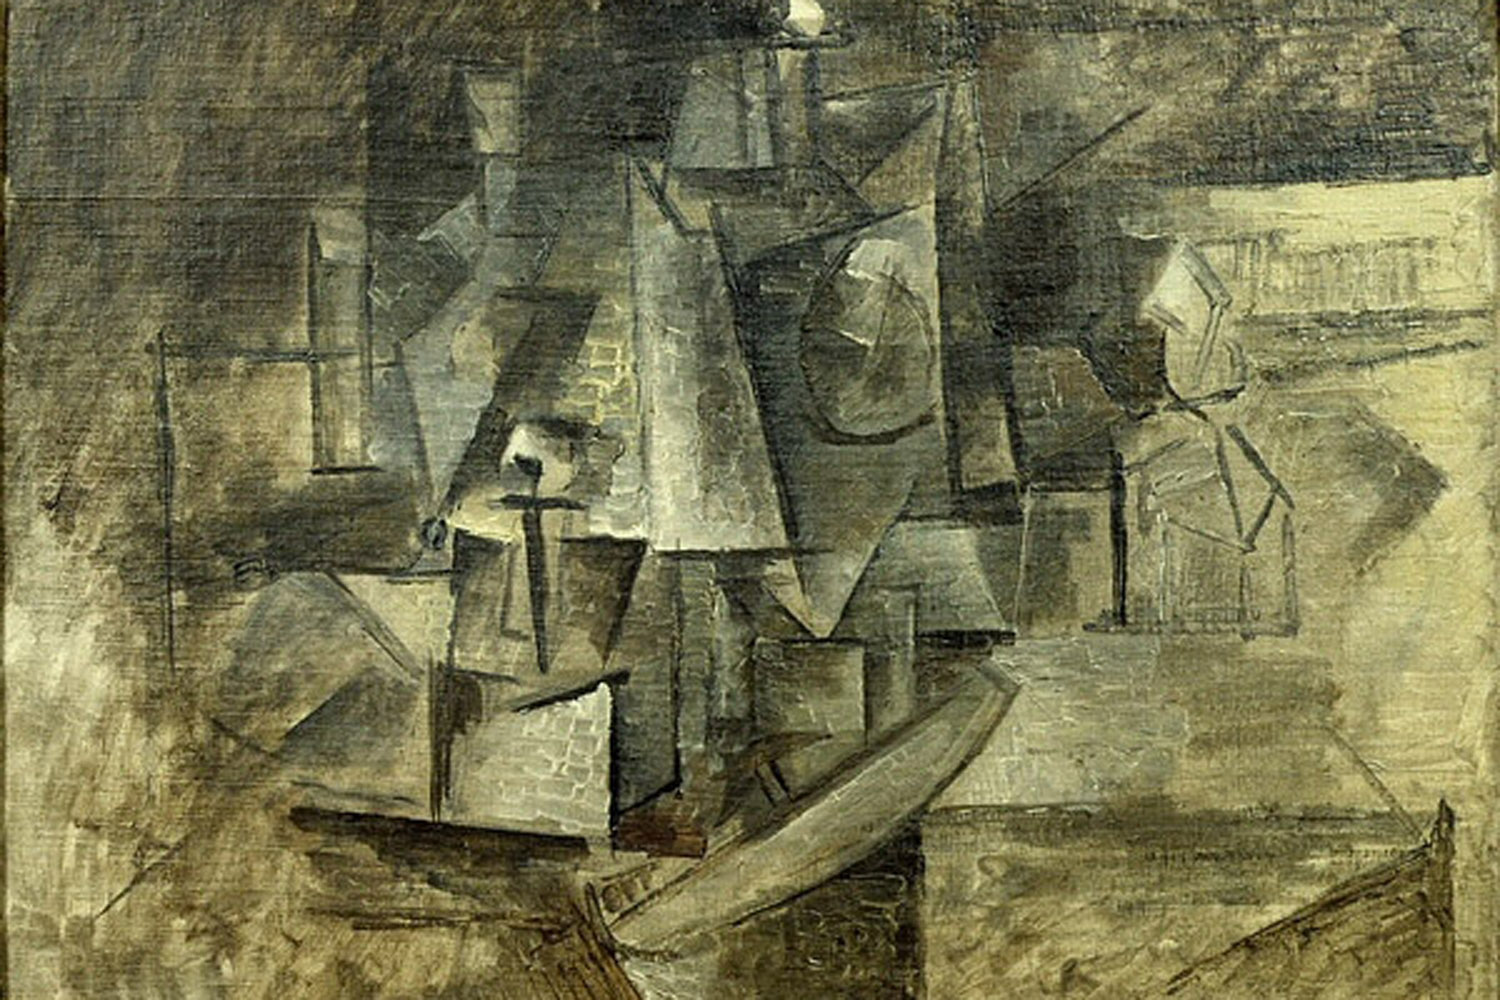 "La Coiffeuse", une toile cubiste peinte par Picasso en 1911 et estimée à 15 millions de dollars est remise ce jeudi aux autorités françaises.